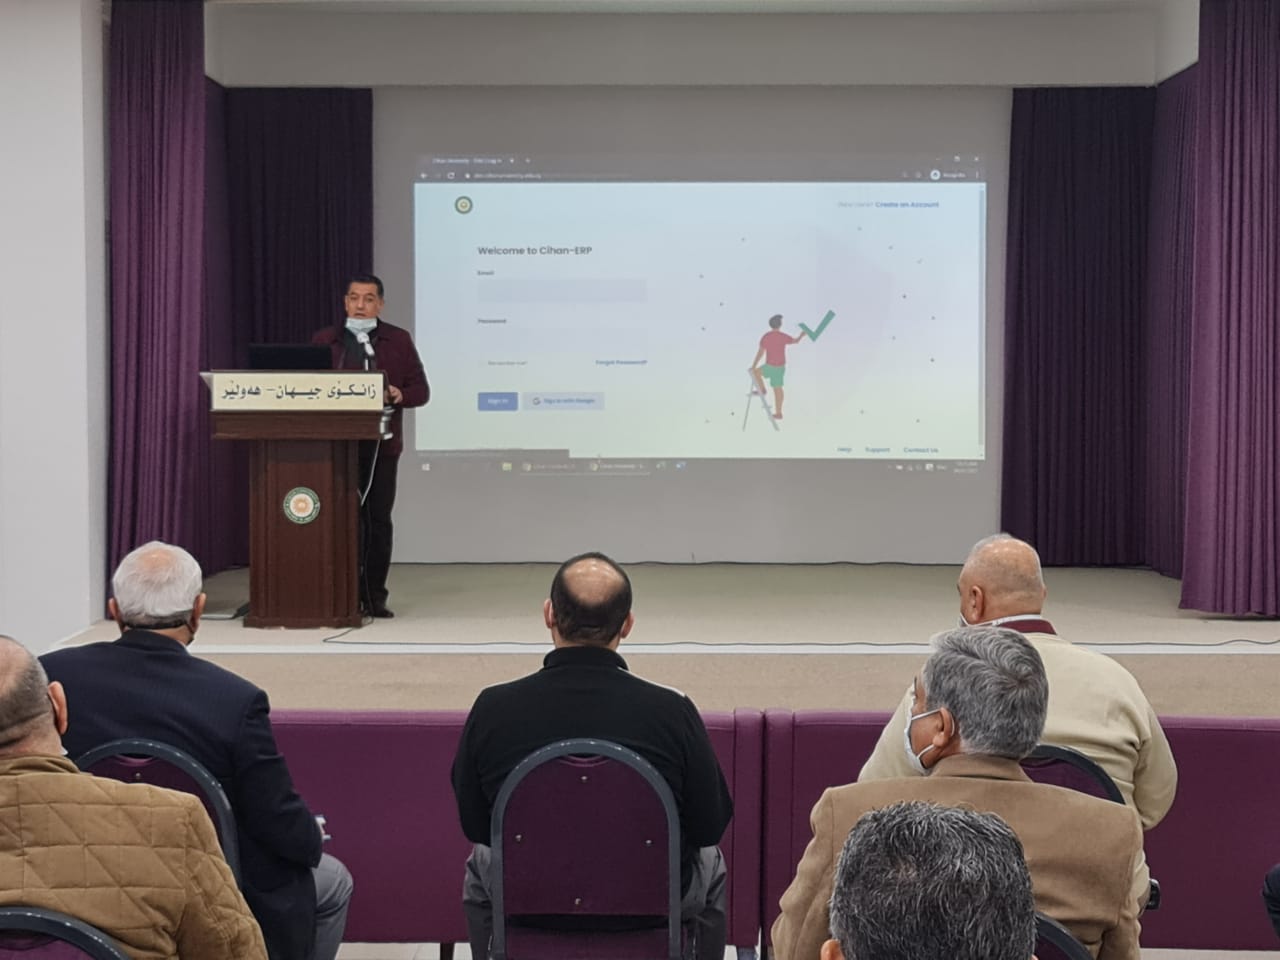 أ. د. أمجد صابر الدلوي: جامعة جيهان بدأت برنامجا مكثفا لإضفاء الطابع الالكتروني على الشؤون العلمية والادارية